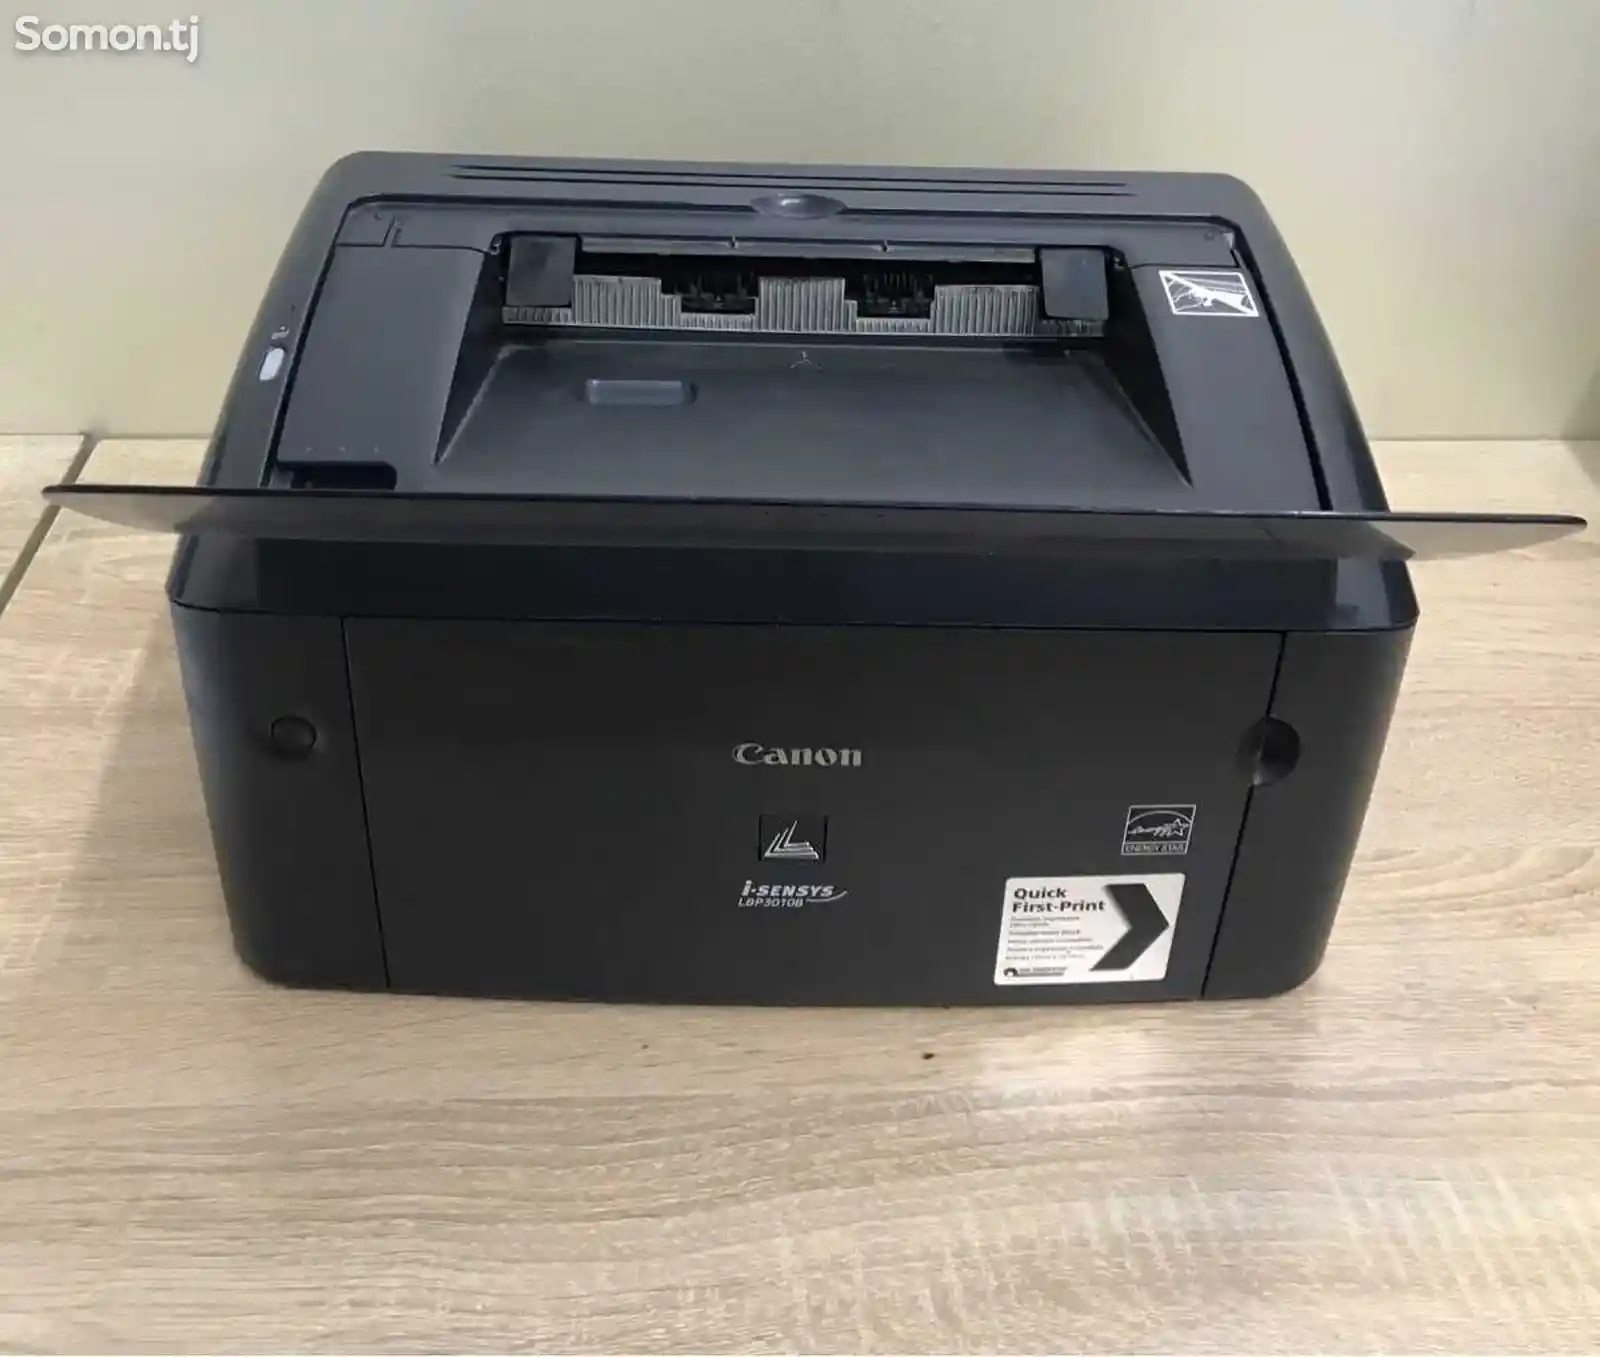 Принтер Canon lbp 3010-4